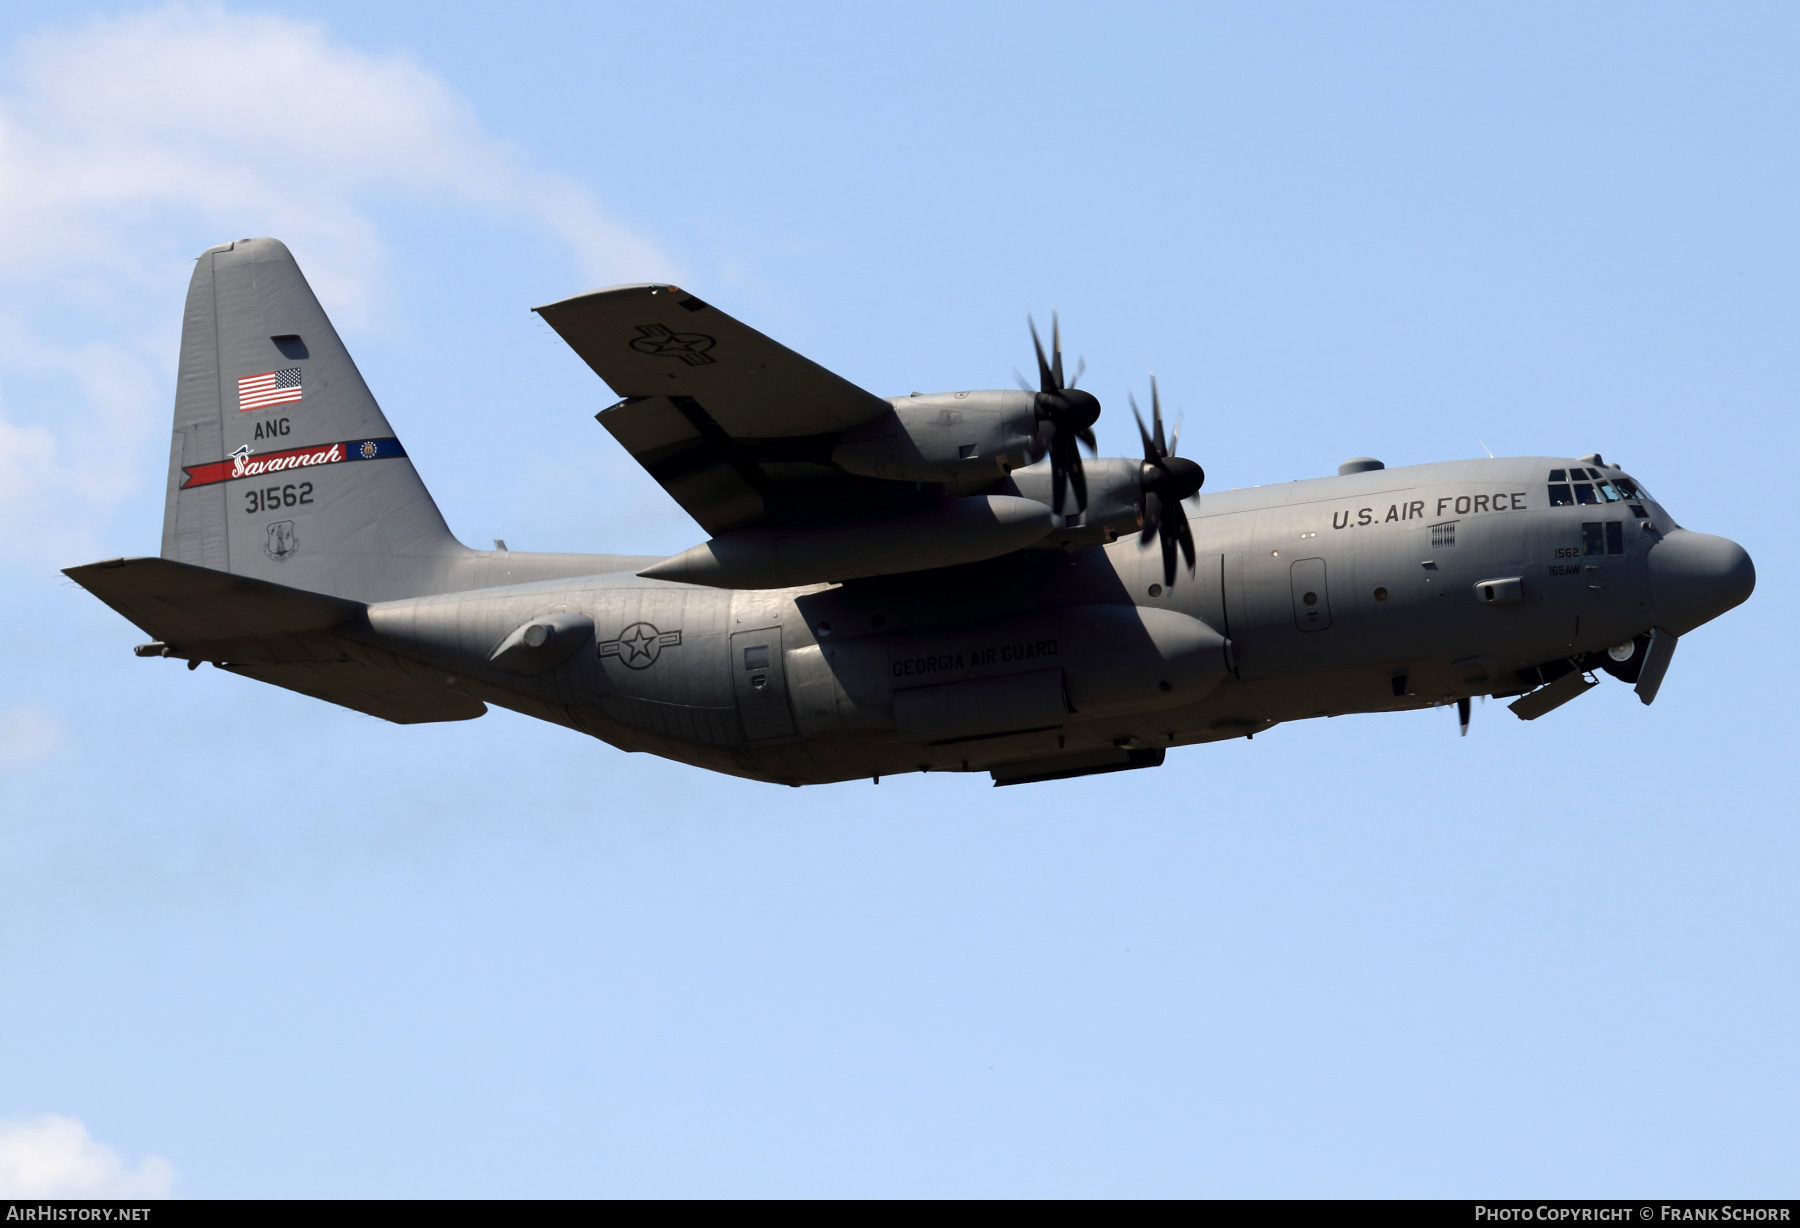 ΠΑ: Συνεχίζονται οι διαδικασίες για την παραχώρηση δύο μεταχειρισμένων C-130H από τα αποθέματα της USAF